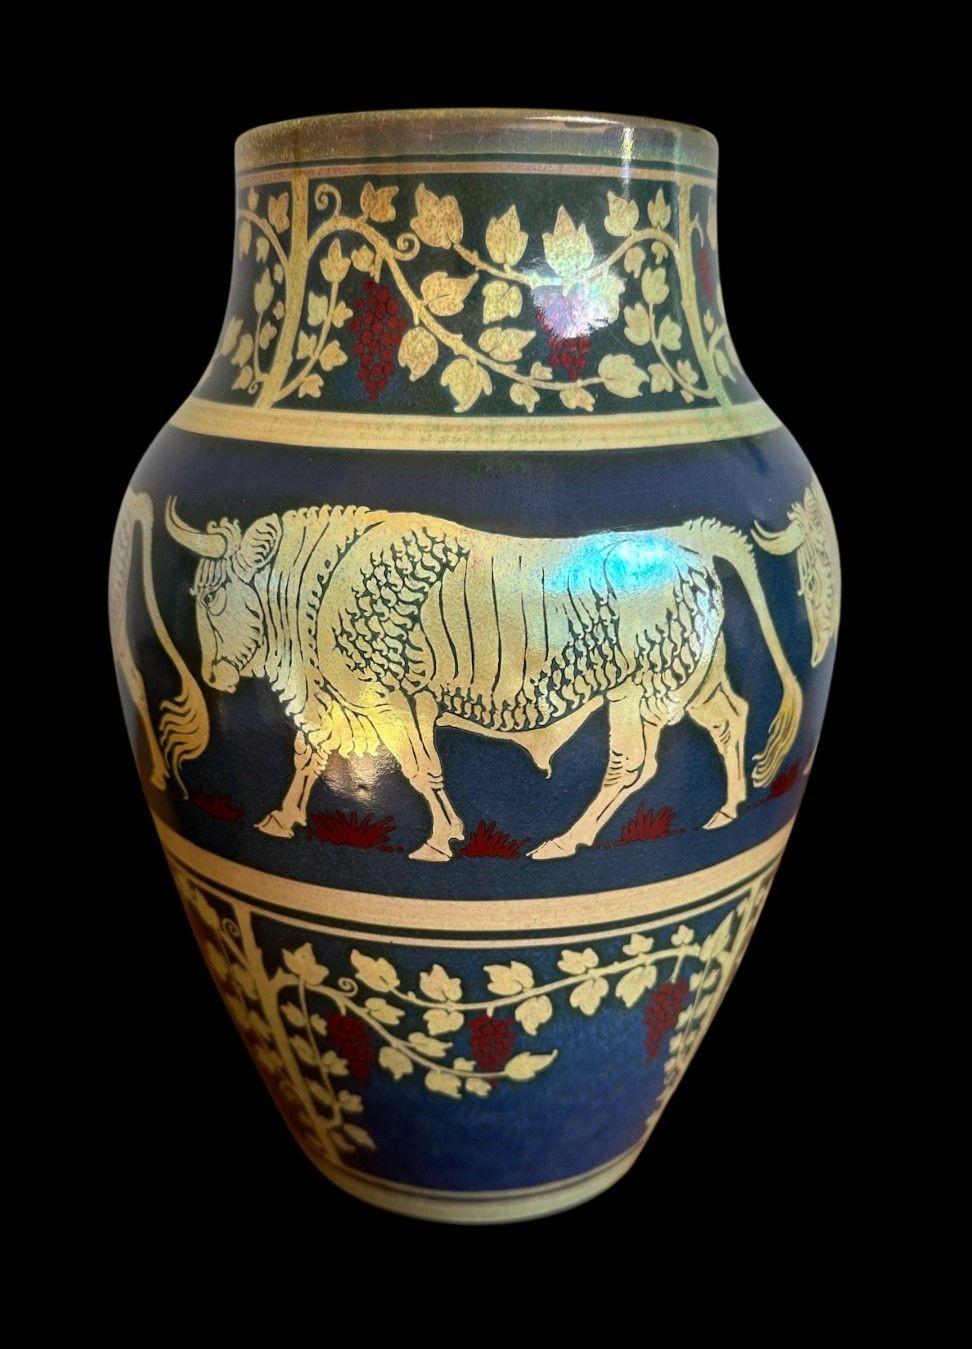 5486
Grand vase Pilkington's Royal Lancastrian Lustre Vase avec une superbe cuisson, décoré de taureaux entre une bande de vignes par Richard Joyce.
27 cm de haut, 18 cm de large
Glaze fritté sur le bord du pied
Chiffre de la date de 1910